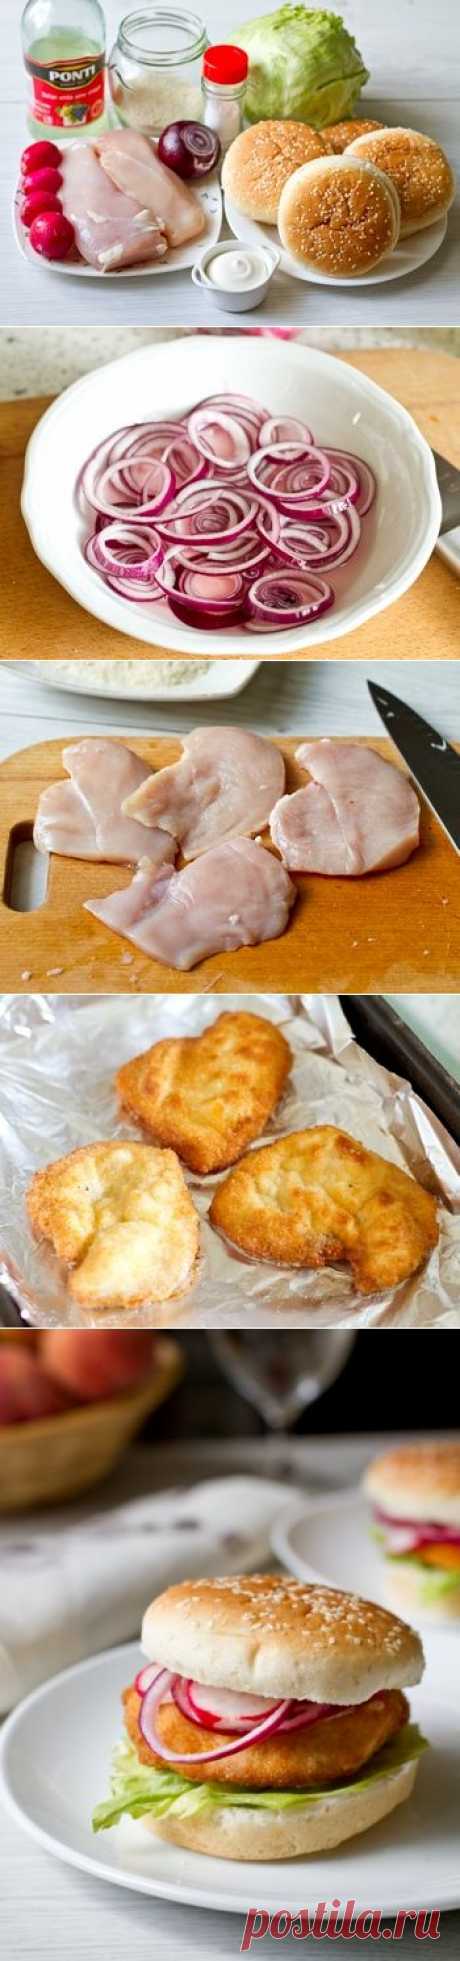 Пошаговый фото-рецепт сэндвичей с куриным филе в хрустящей панировке